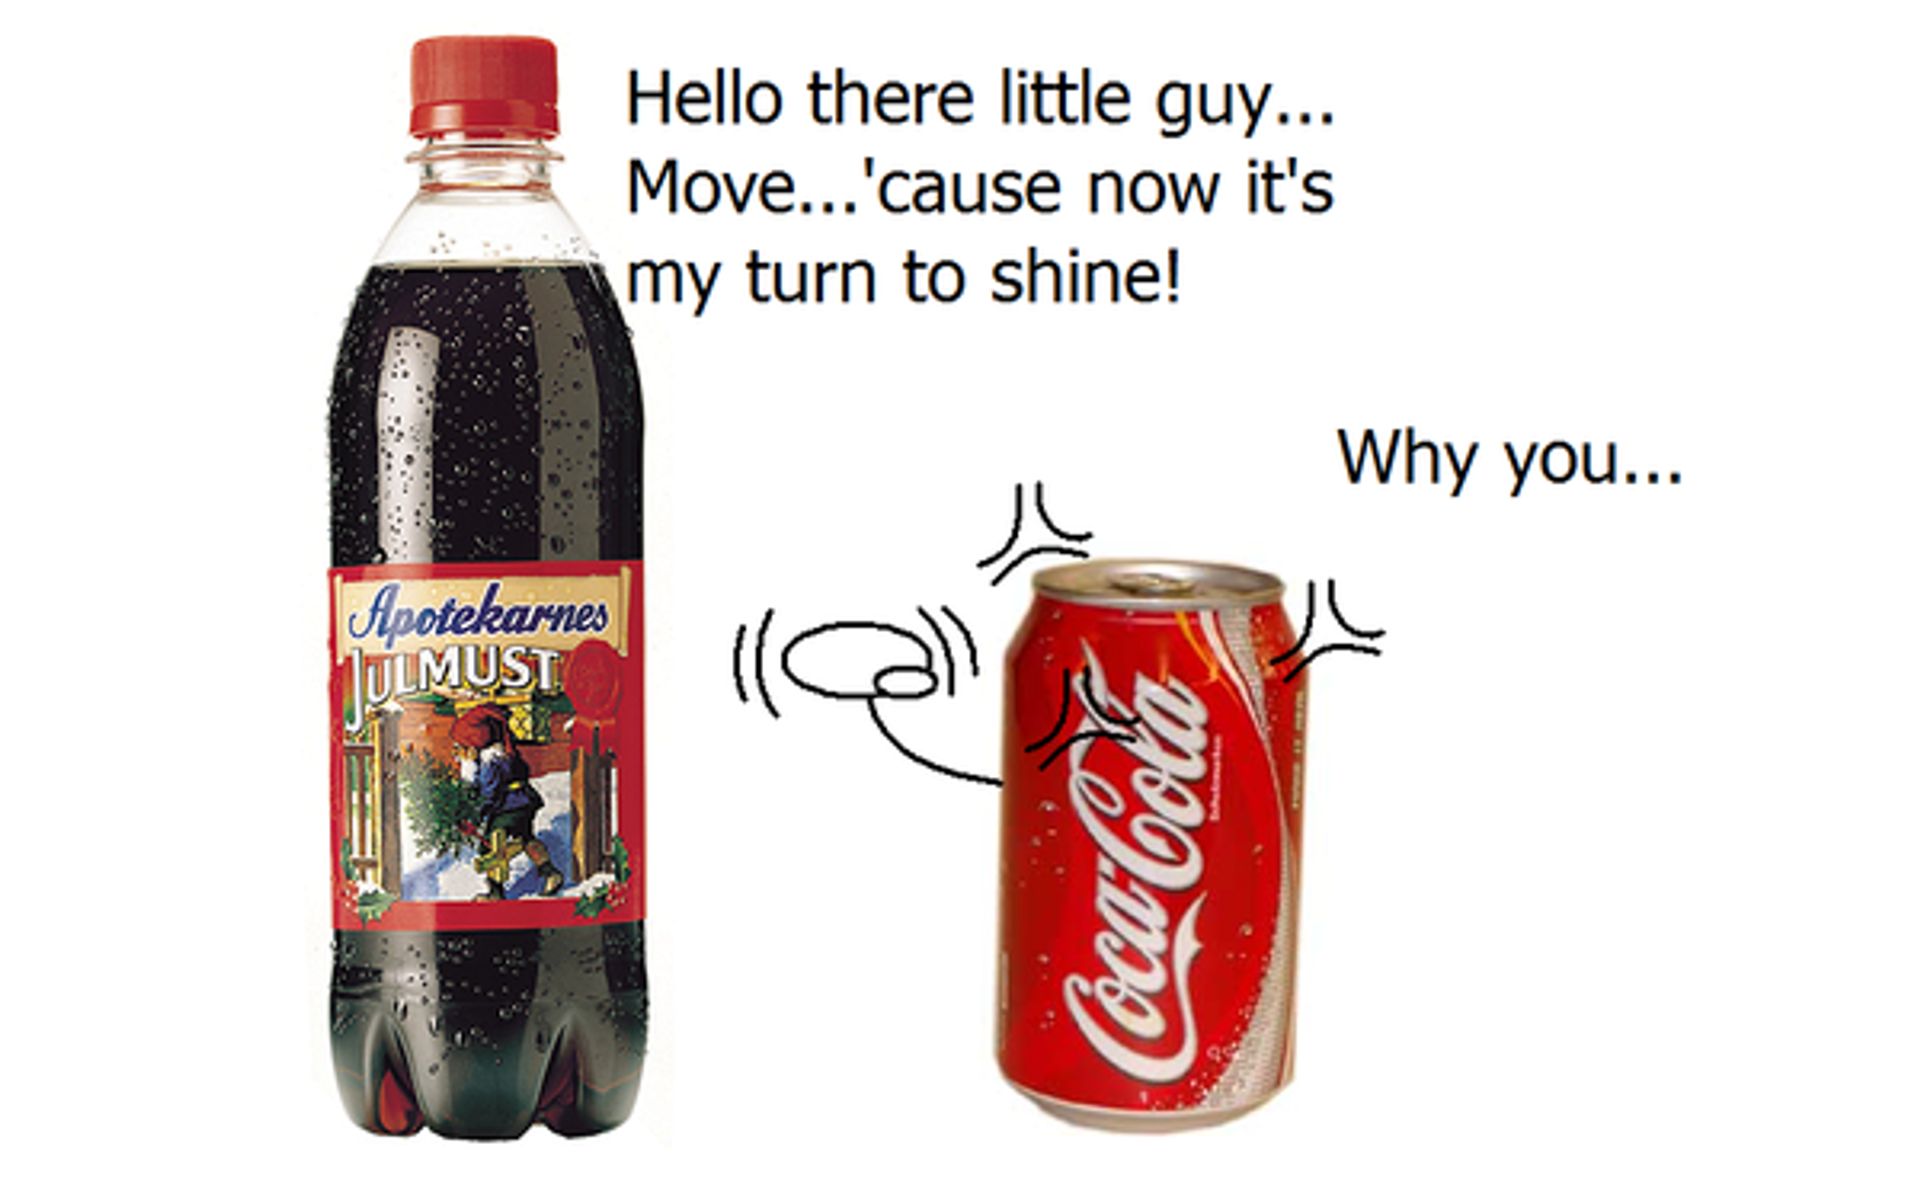 julmust_vs__coke_by_chili19